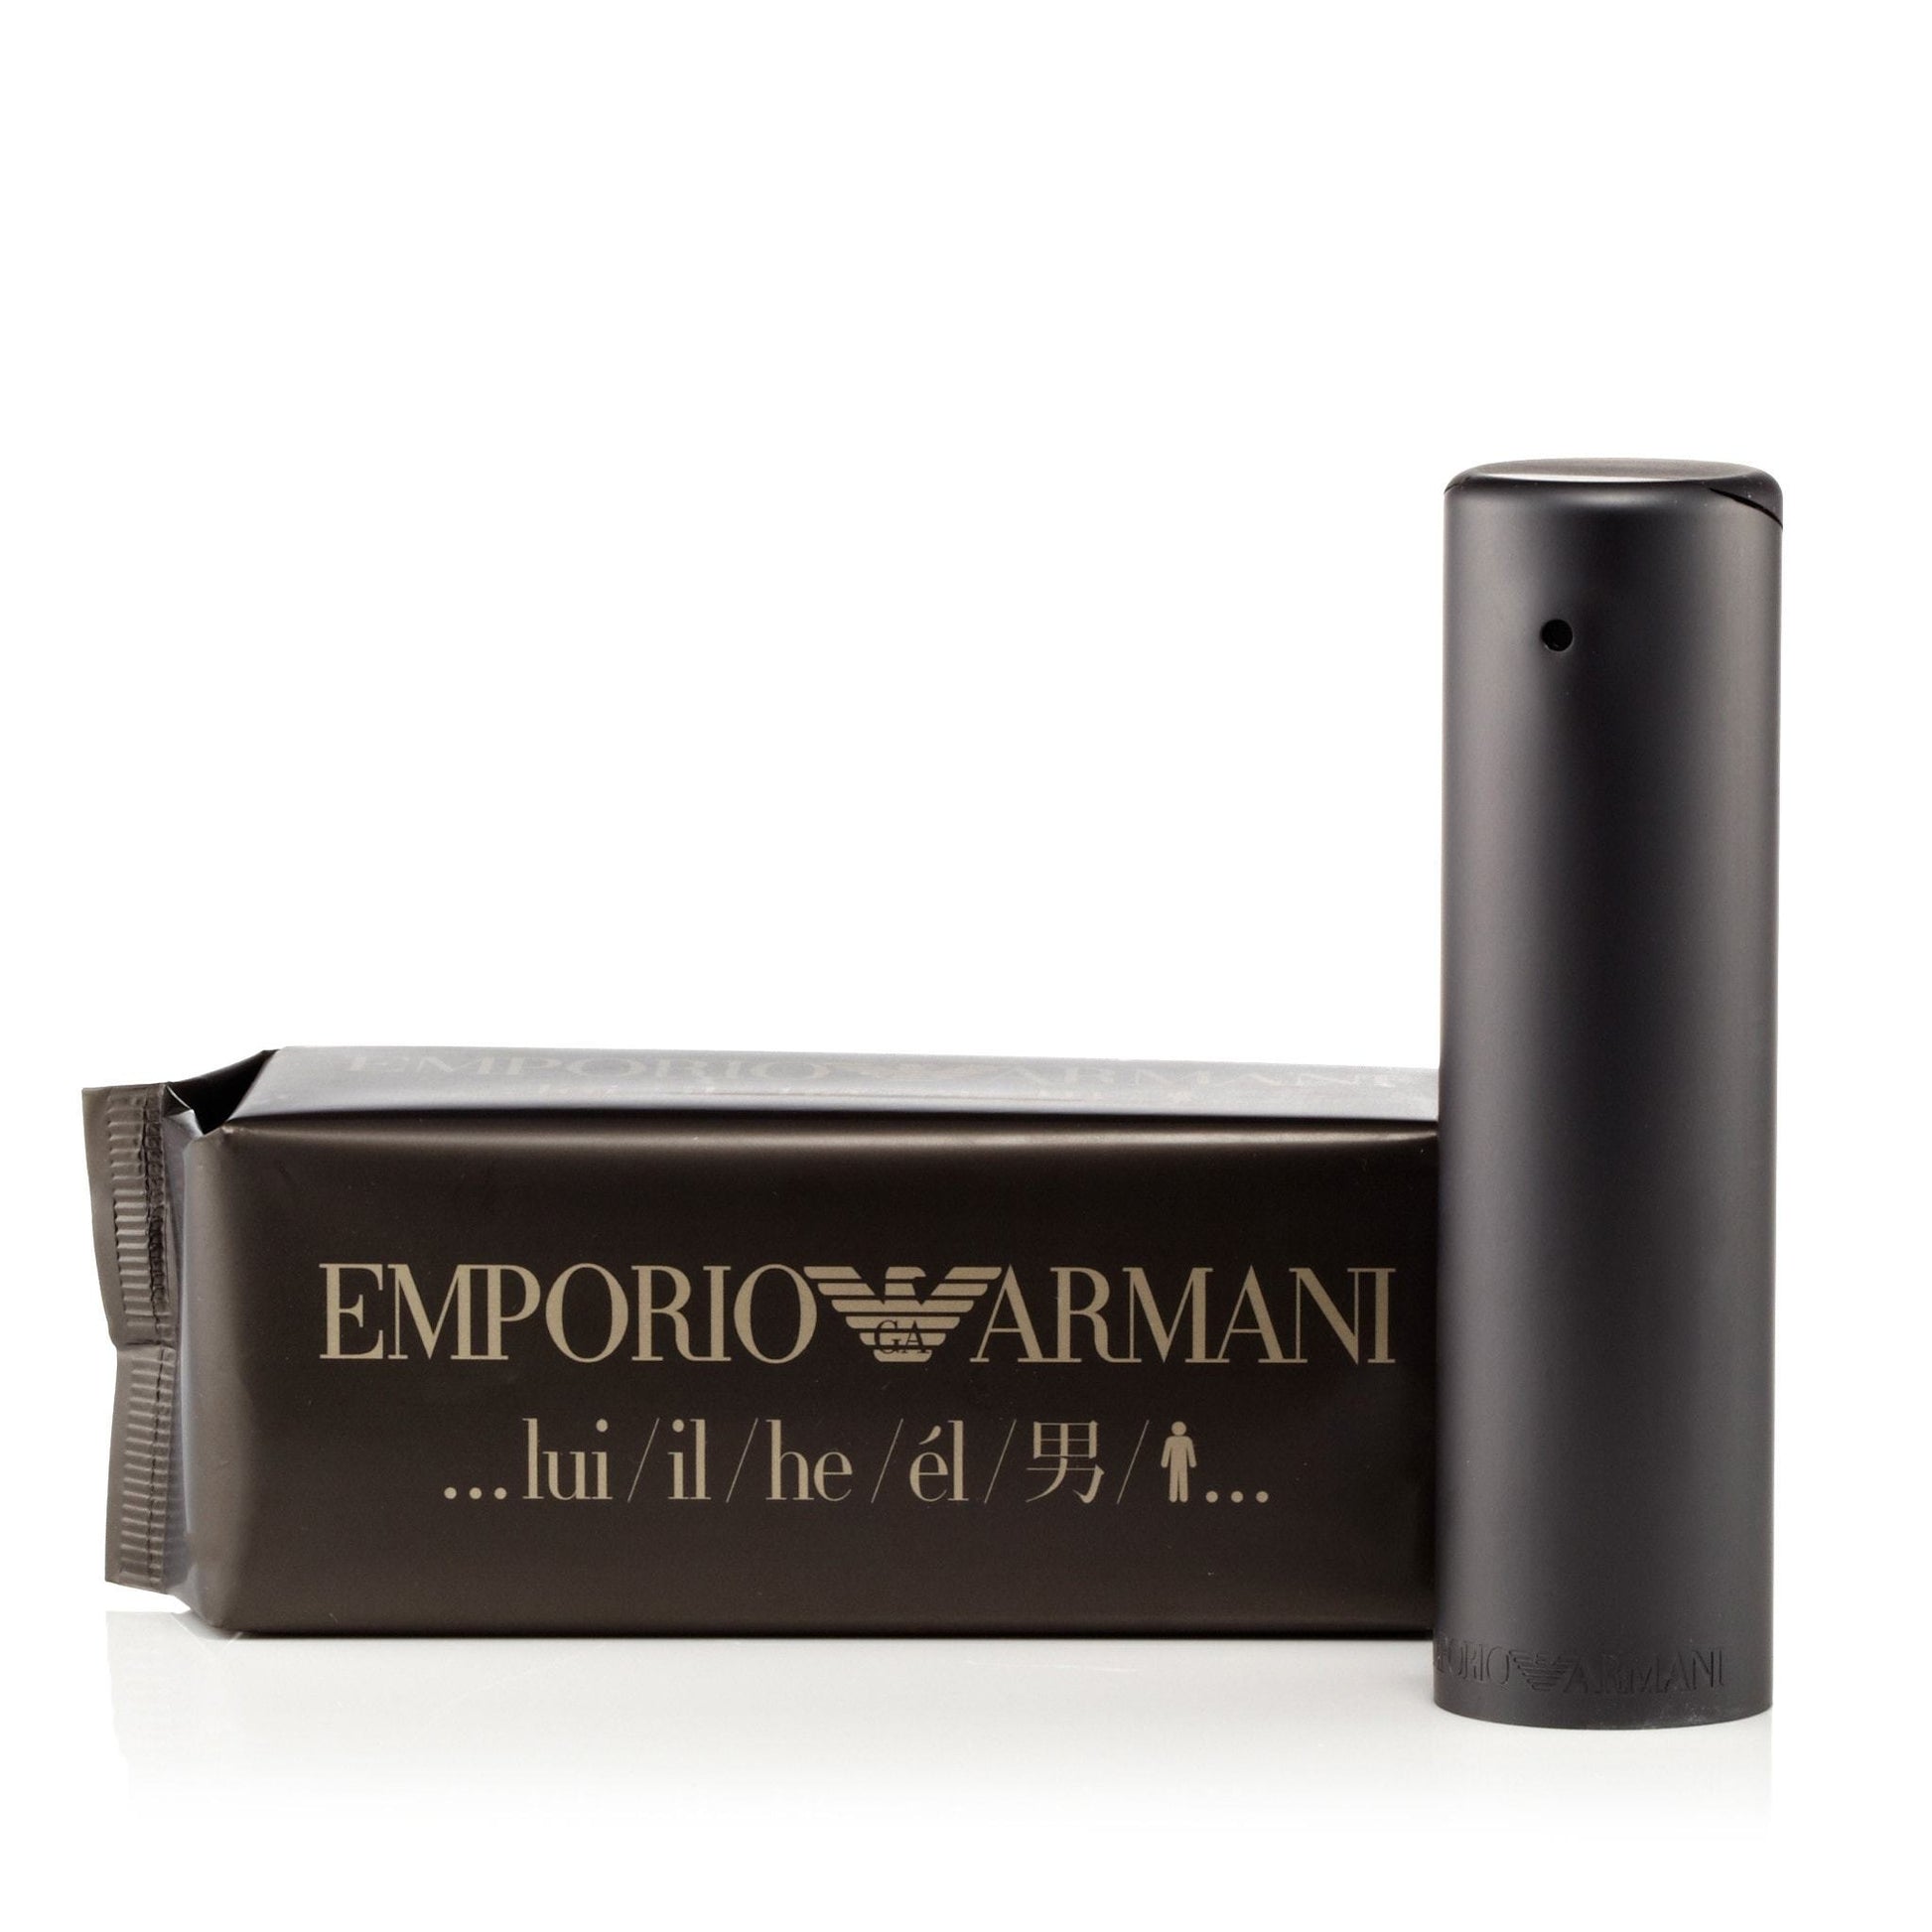 Emporio Armani Eau de Toilette Spray for Men by Giorgio Armani, Product image 1